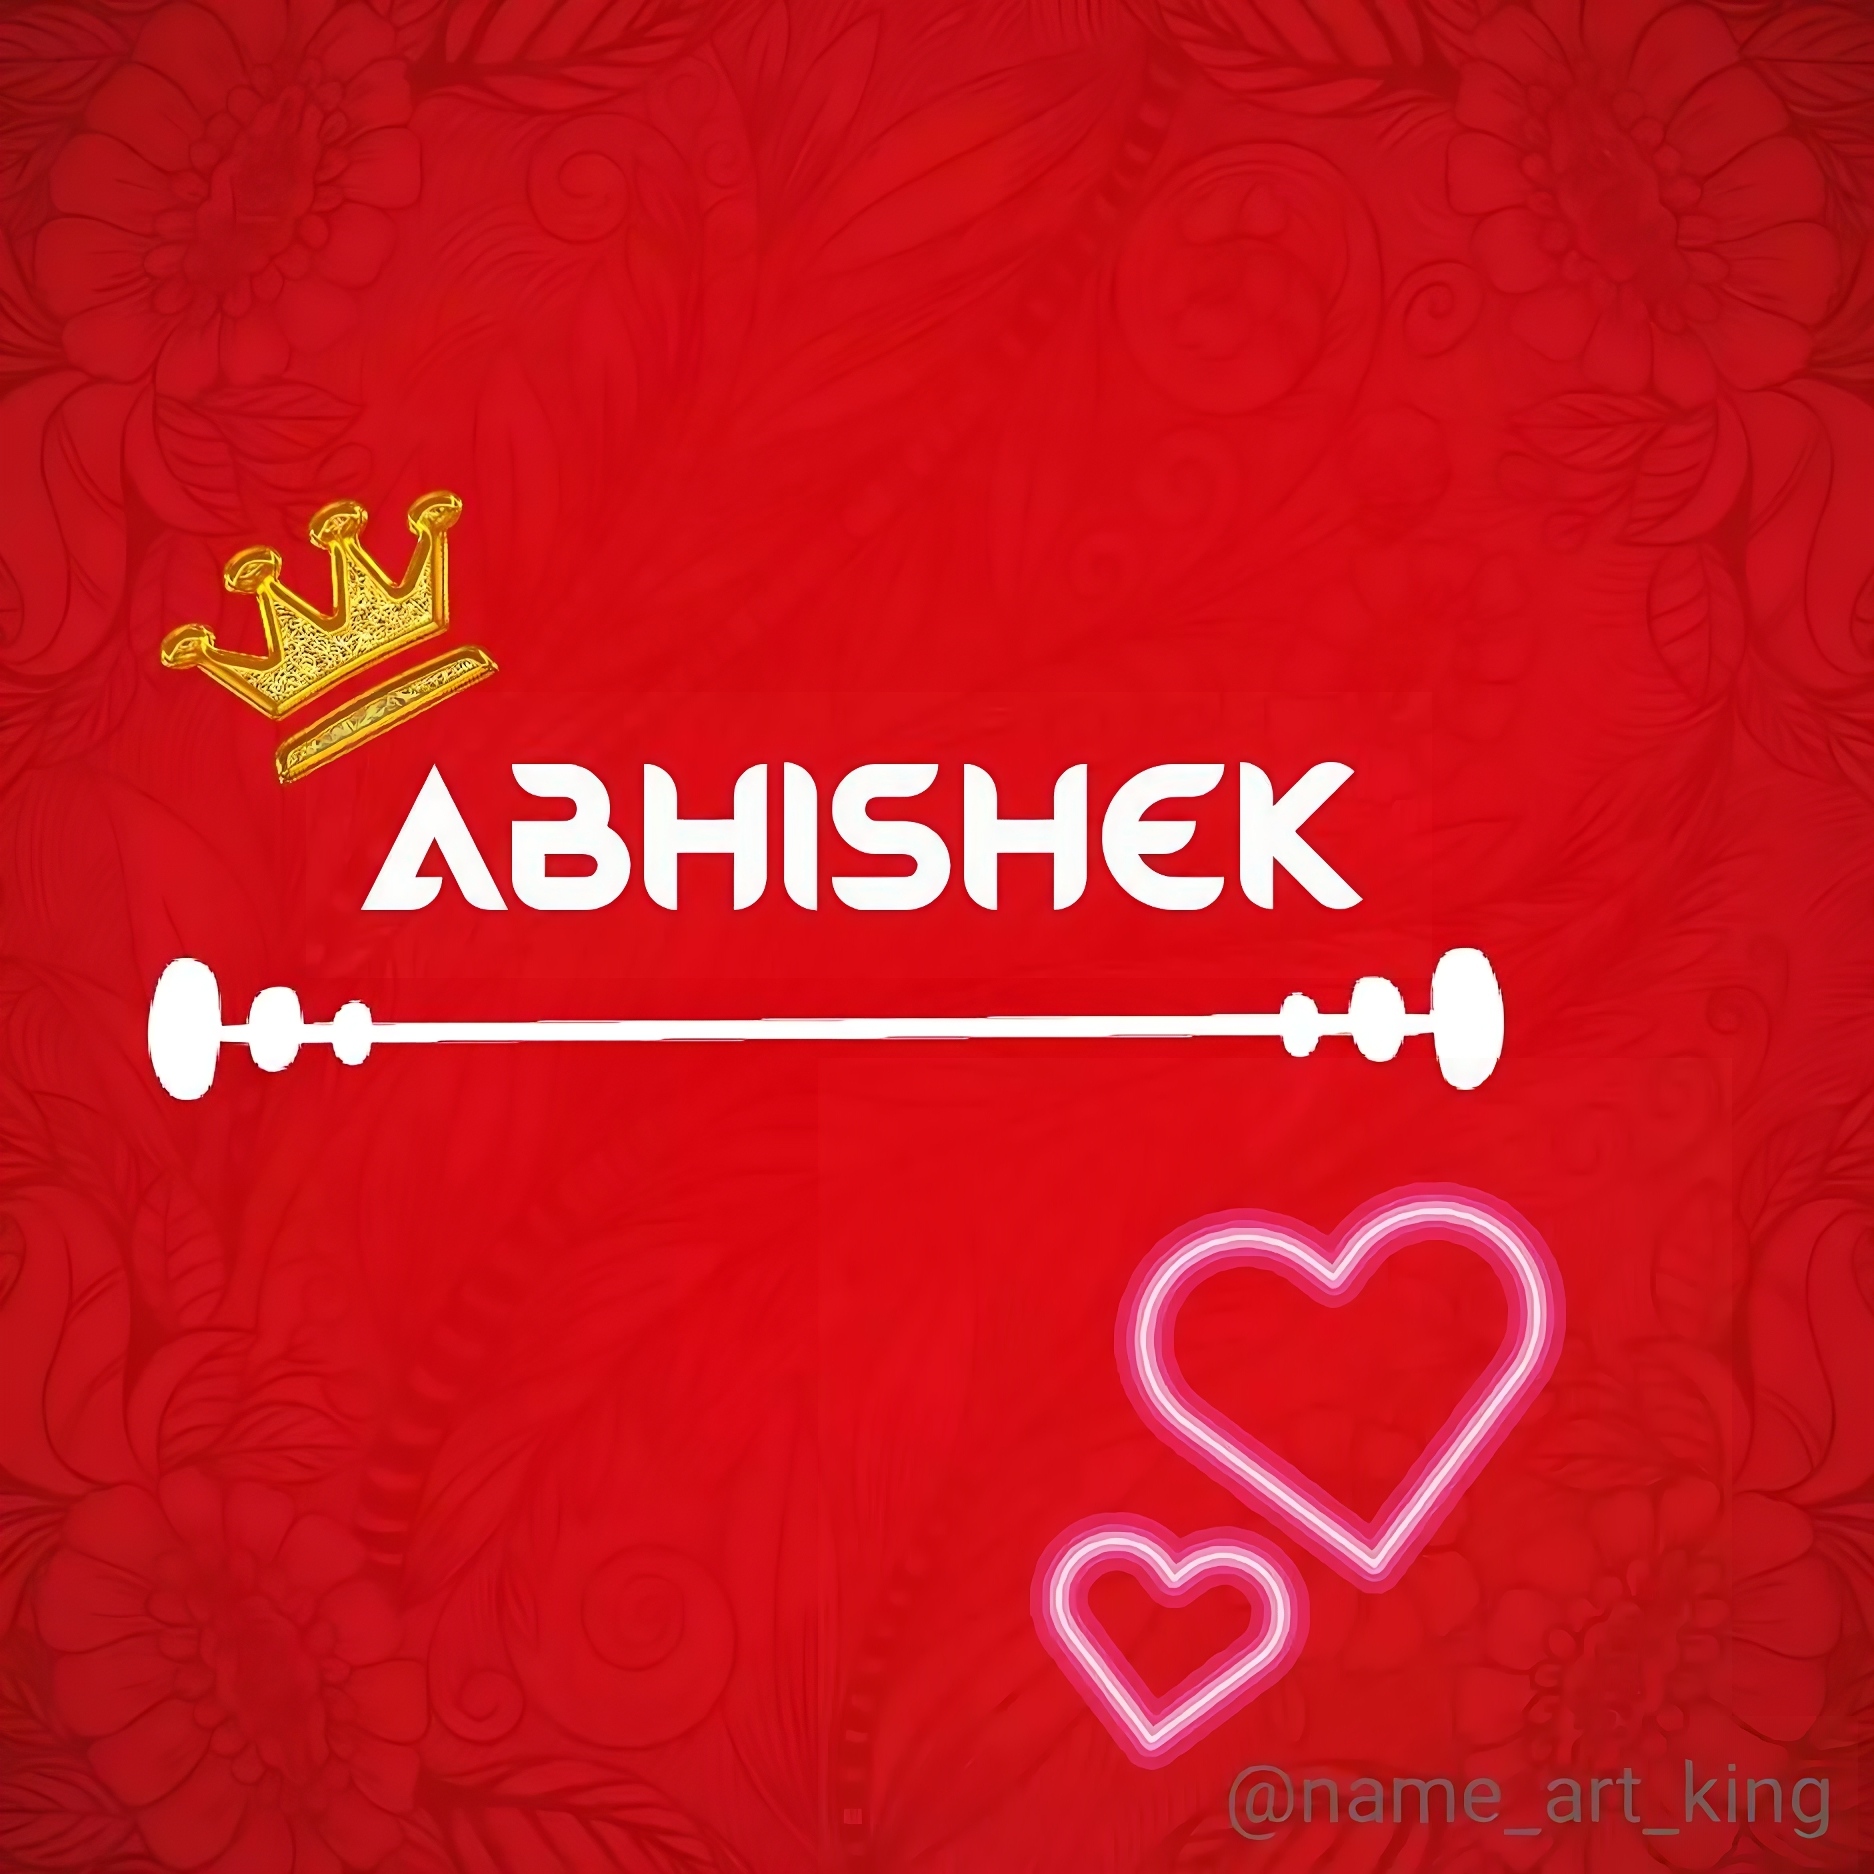 Abhishek Name - abhishek in red bg